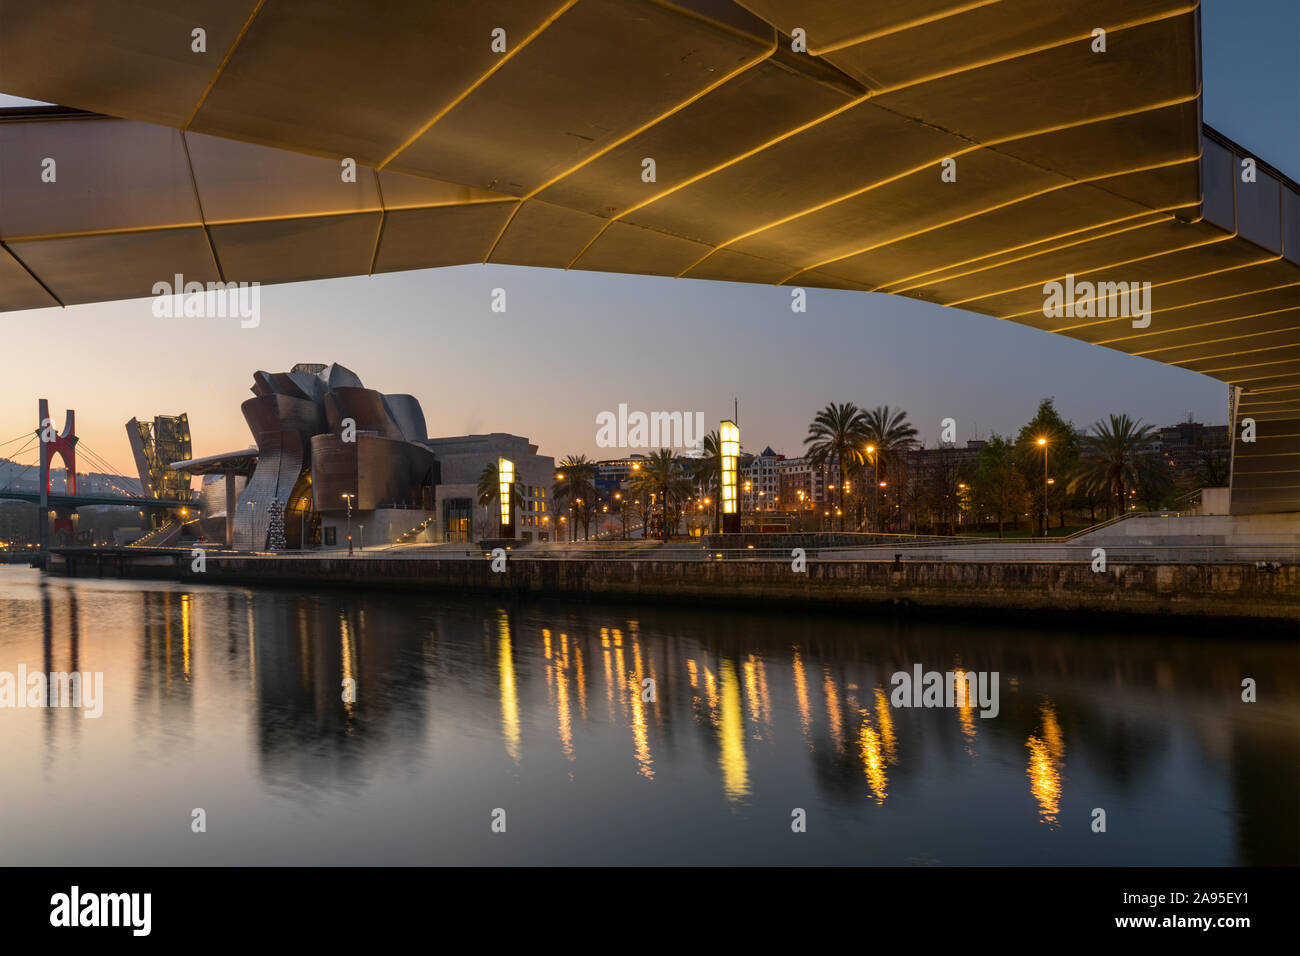 View all'alba attraverso il fiume Nervion verso l'illuminata Museo Guggenheim. Preso dal di sotto della Pasarela Pedro Arrupe bridge, Bilbao, Spagna Foto Stock